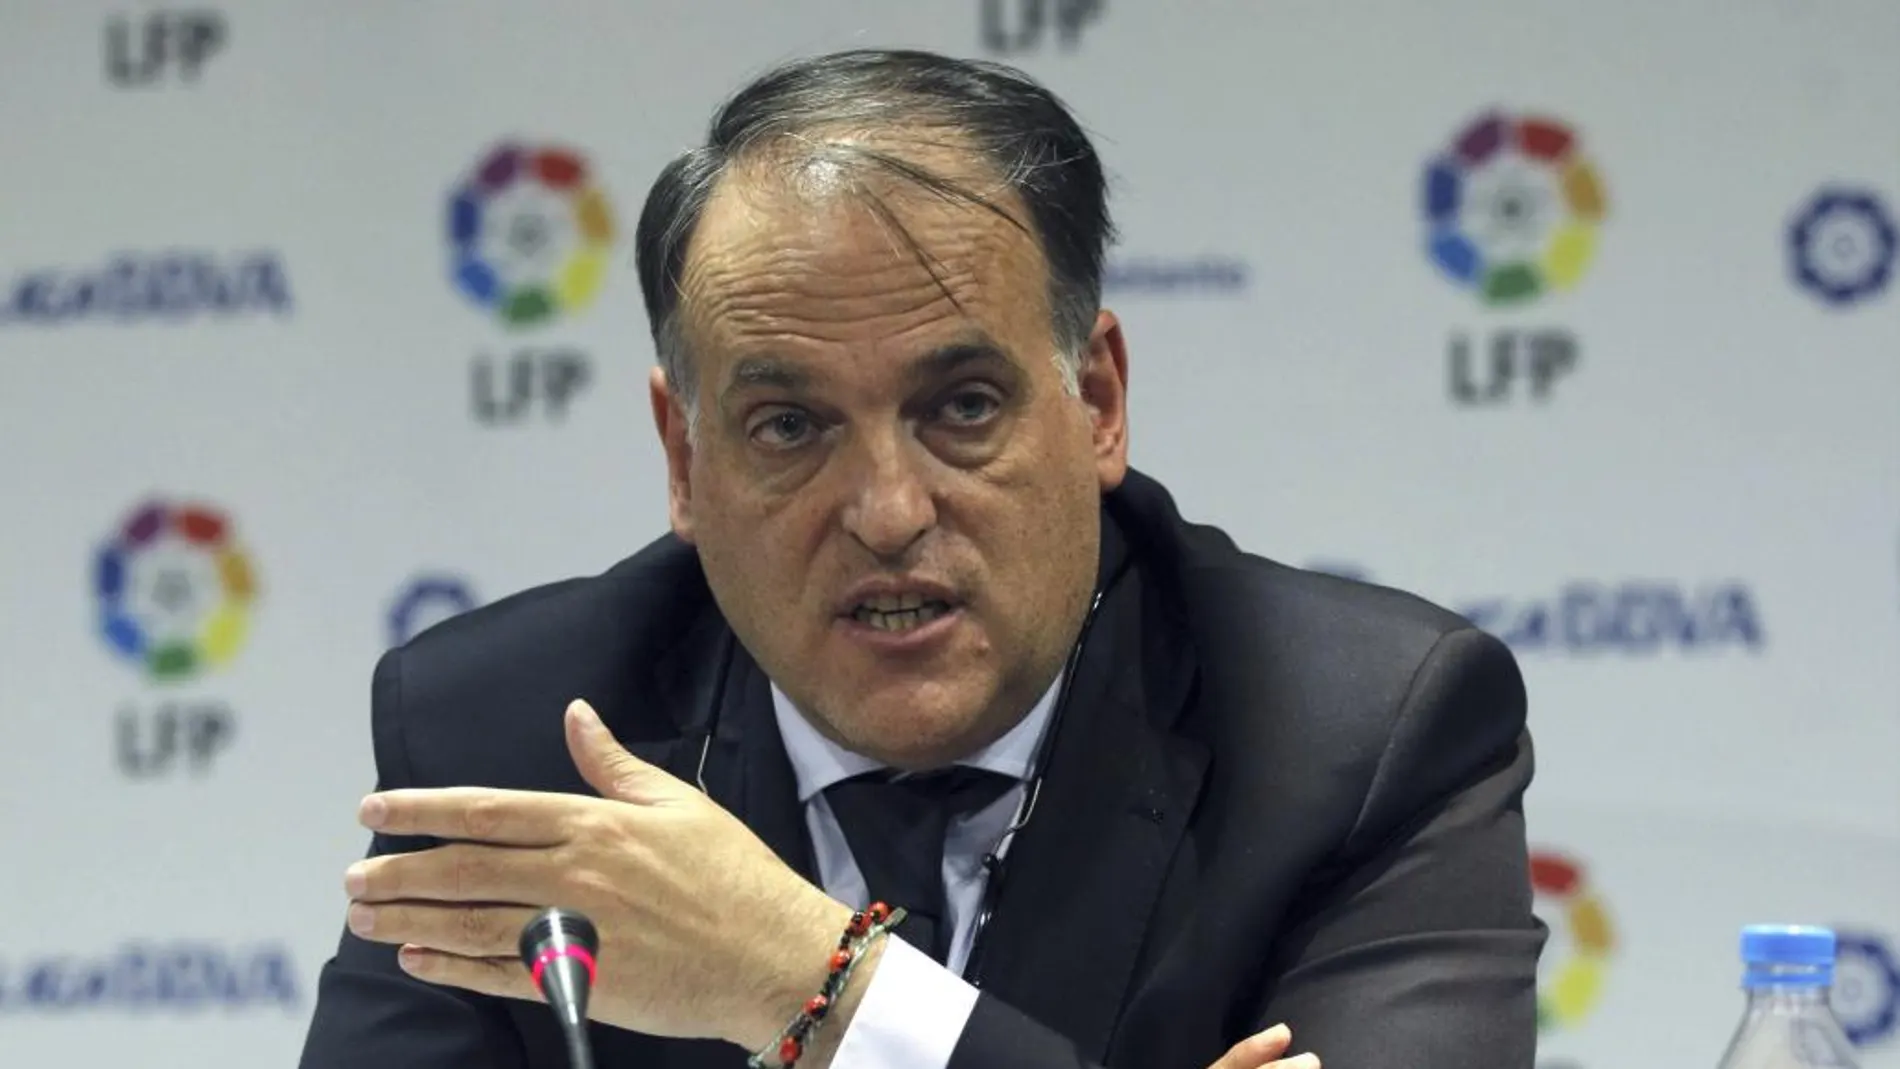 El presidente de la Liga de Fútbol Profesional (LFP), Javier Tebas Medrano.